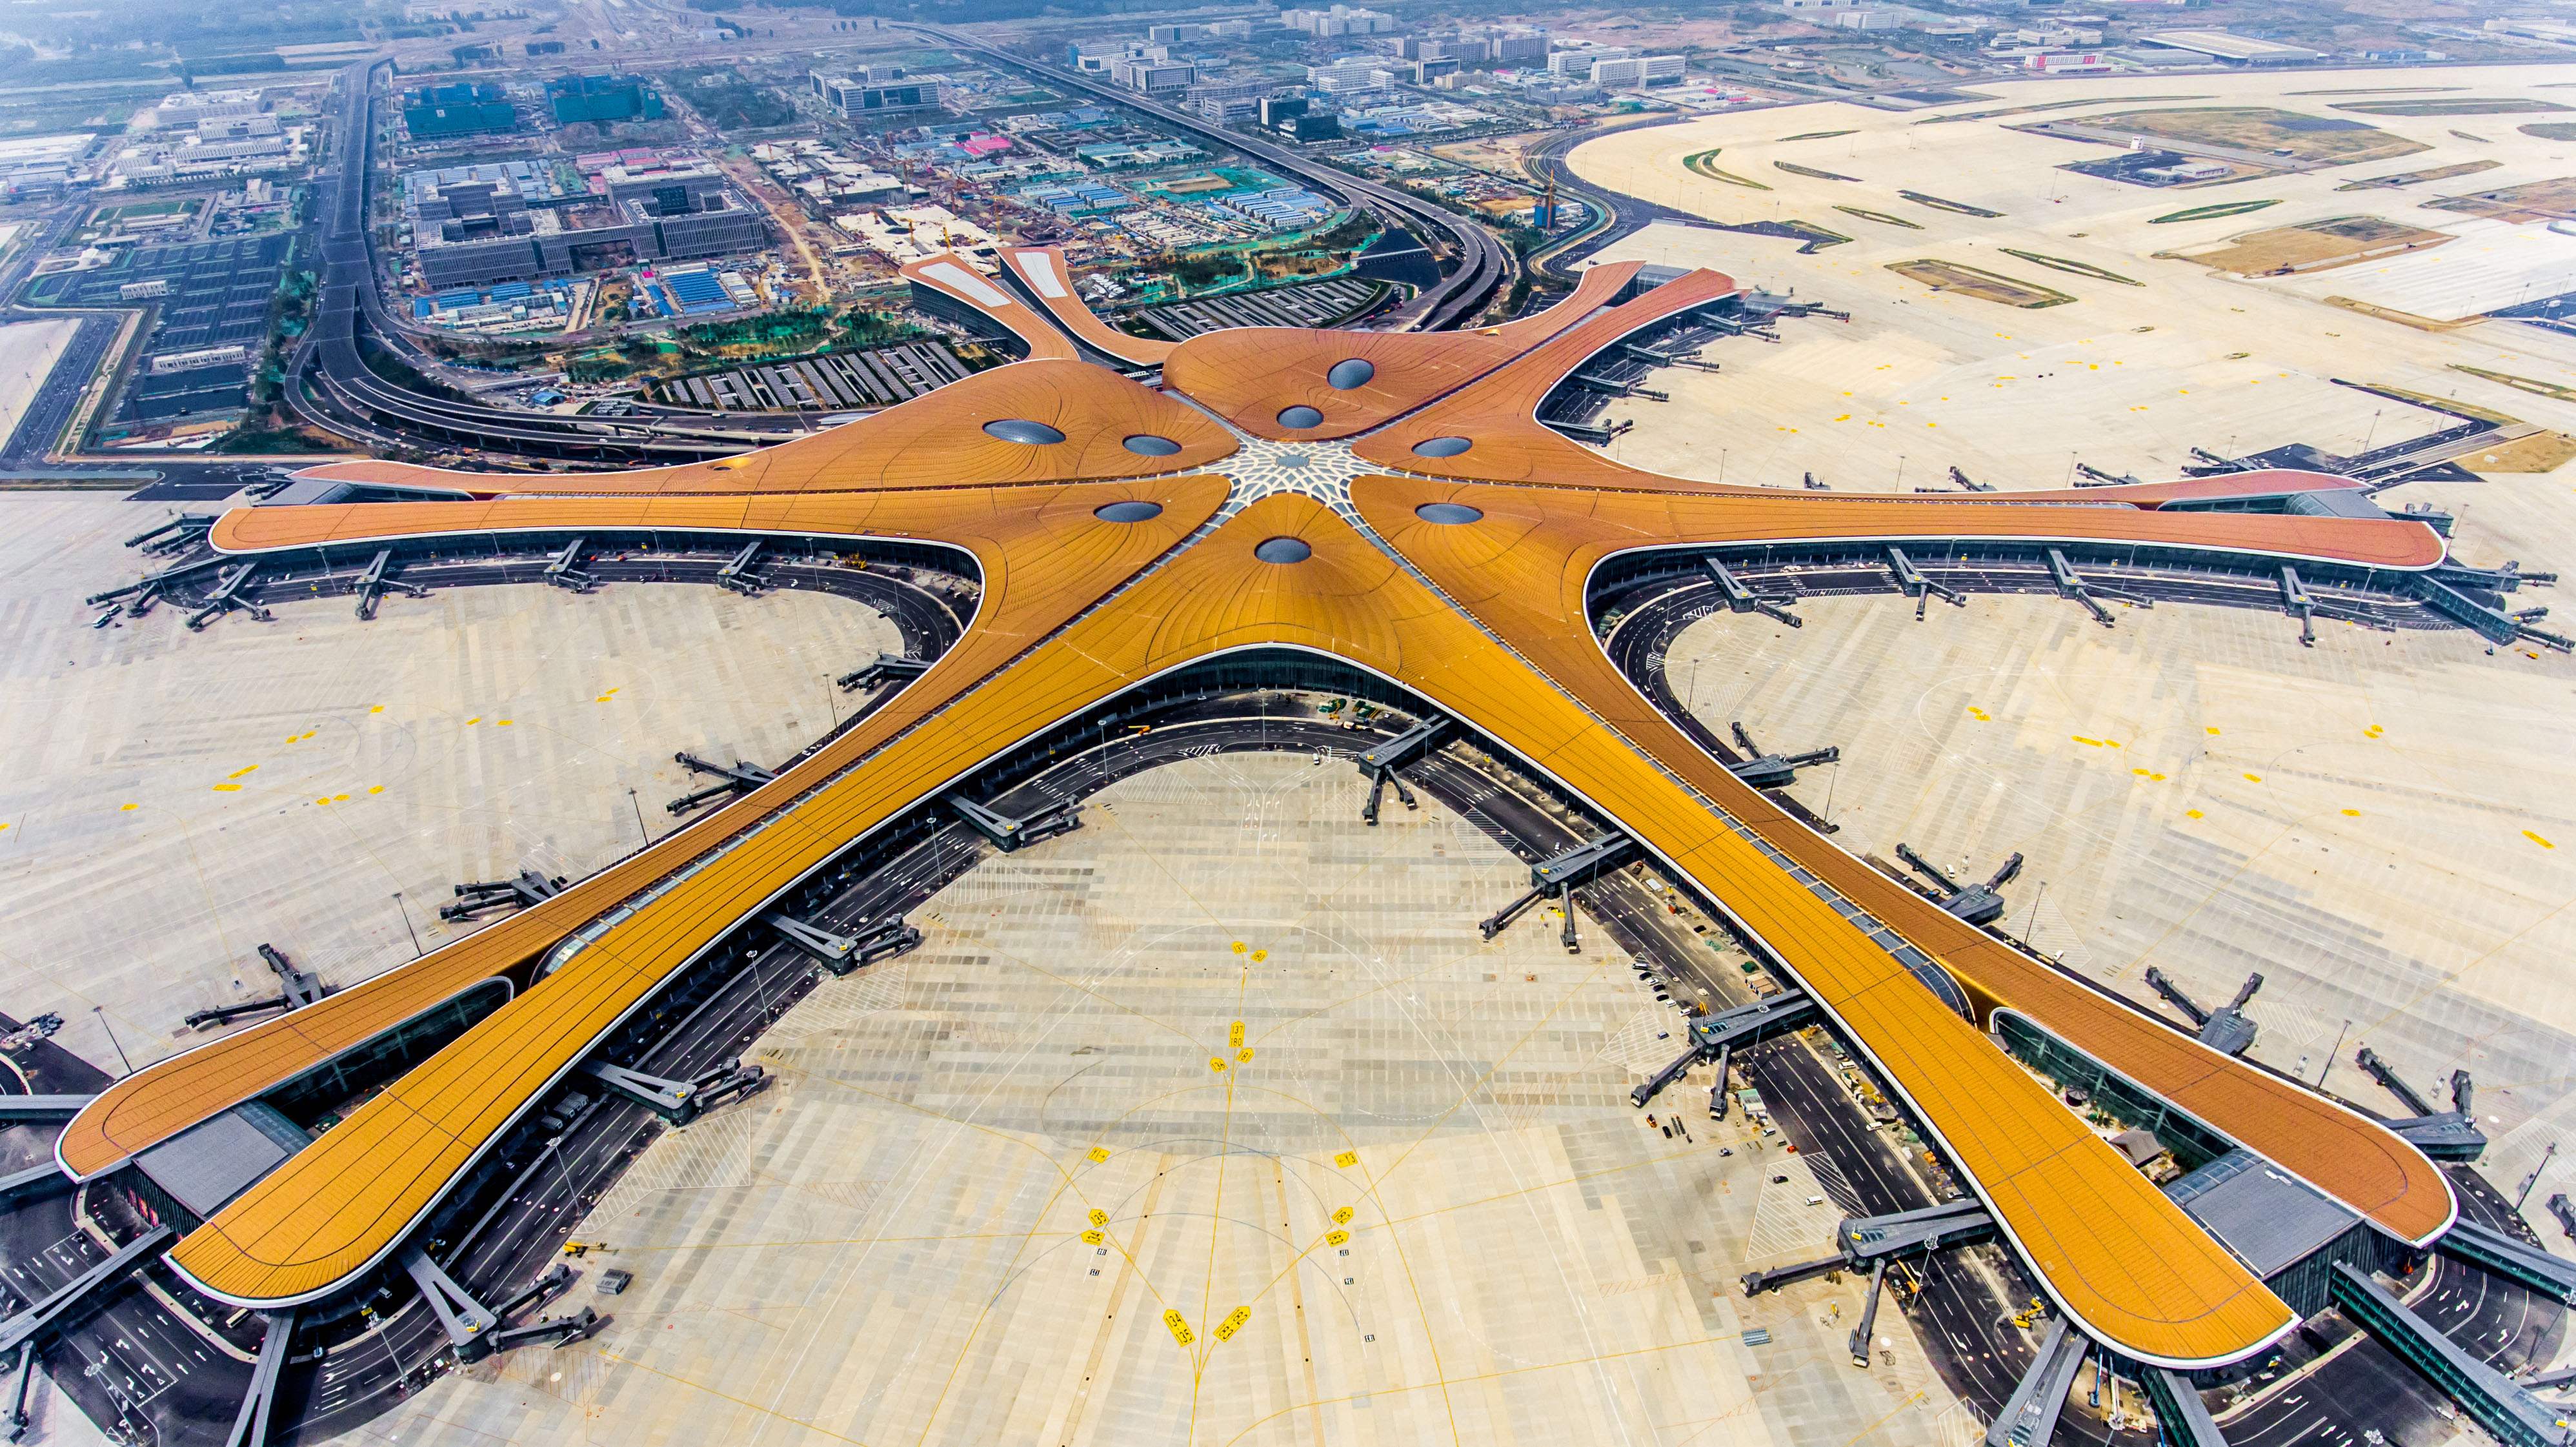 El nuevo Aeropuerto Internacional de Pekín – Daxing se asemeja a una enorme estrella de mar brillante, con el que se pretende acomodar el creciente tráfico aéreo en China. (Foto Prensa Libre: AFP)